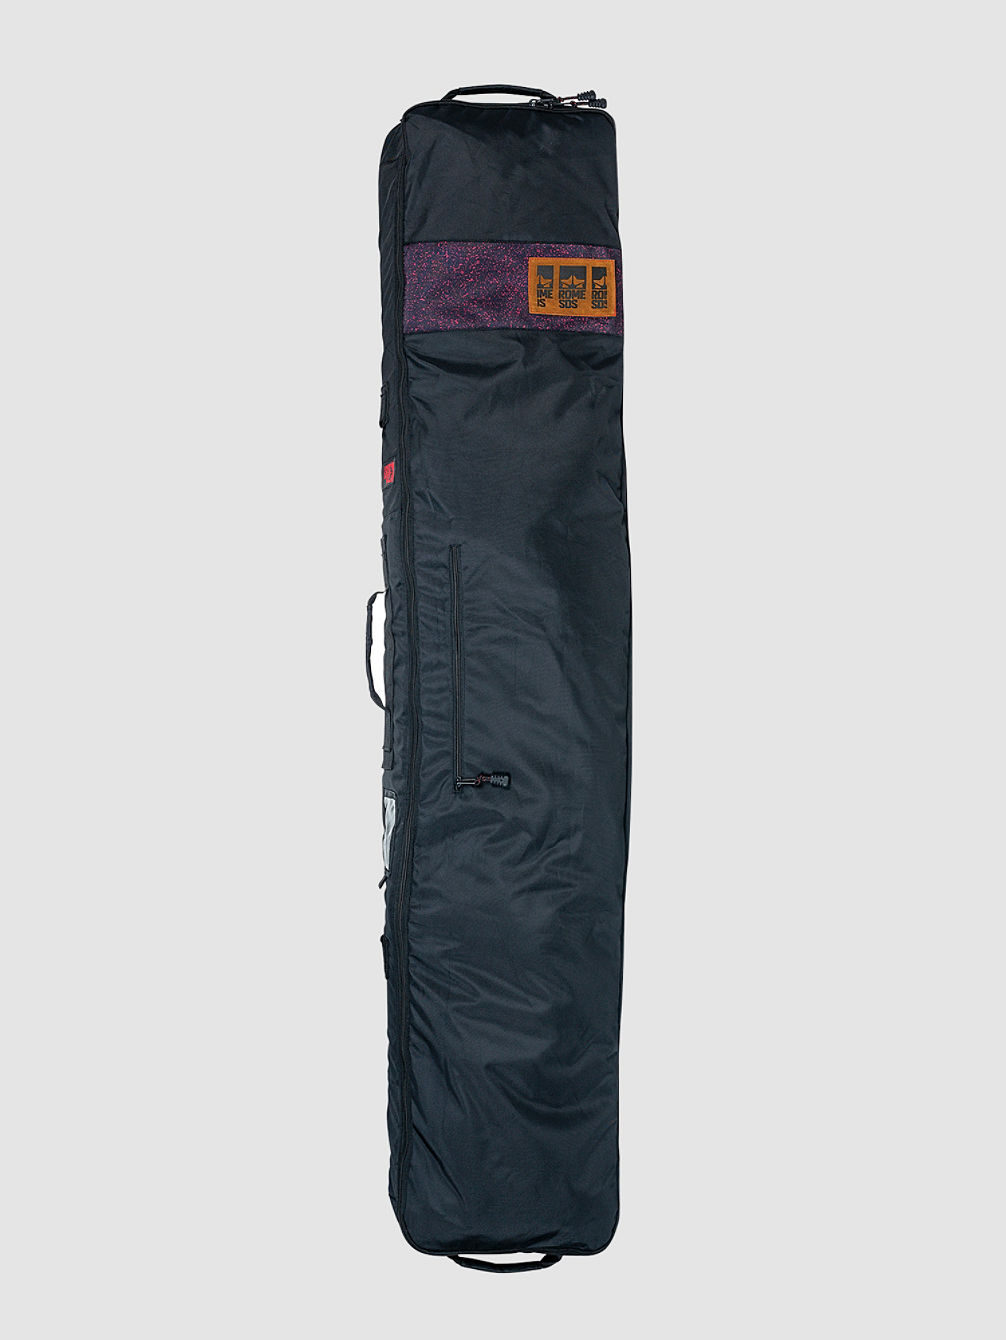 Nomad Snowboard Bag